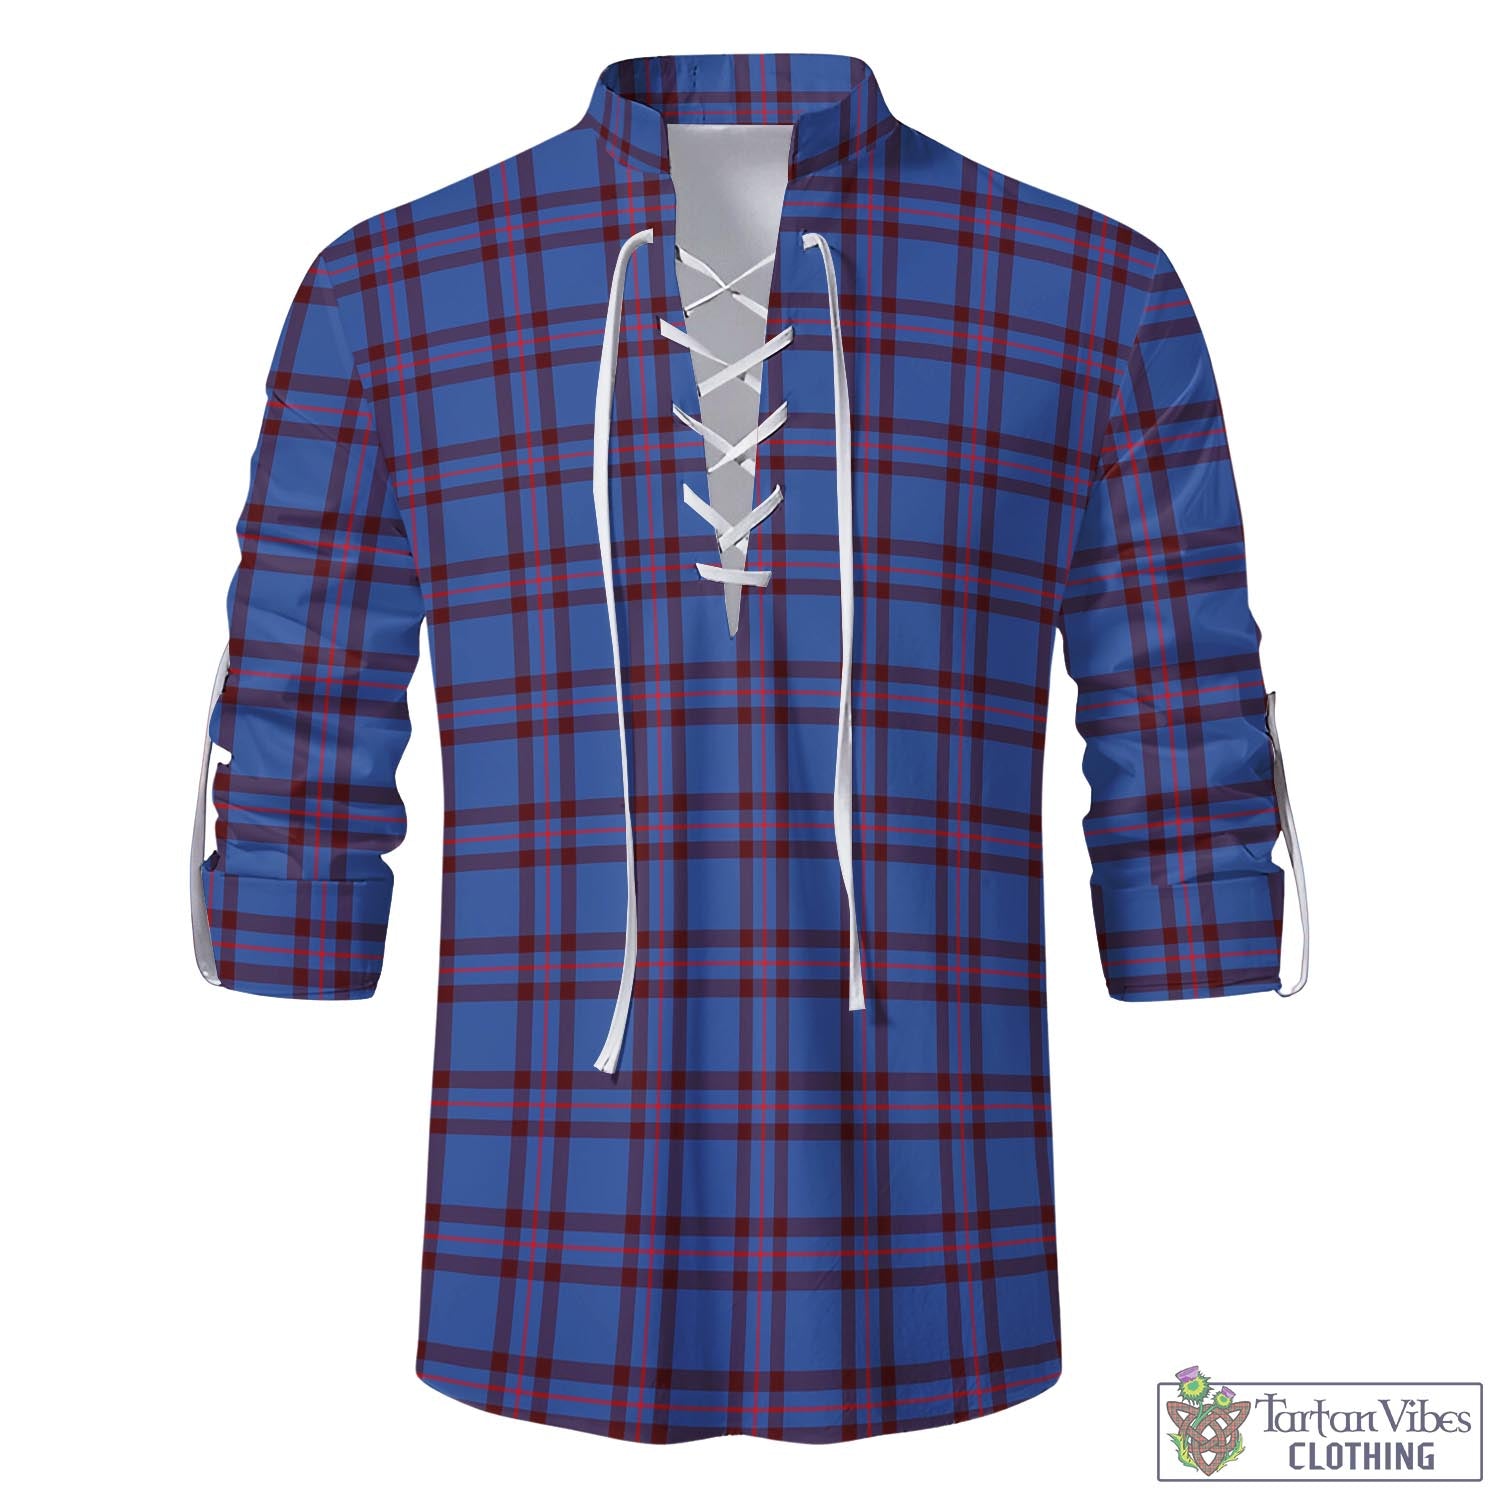 Tartan Vibes Clothing Elliot Modern Tartan Men's Scottish Traditional Jacobite Ghillie Kilt Shirt